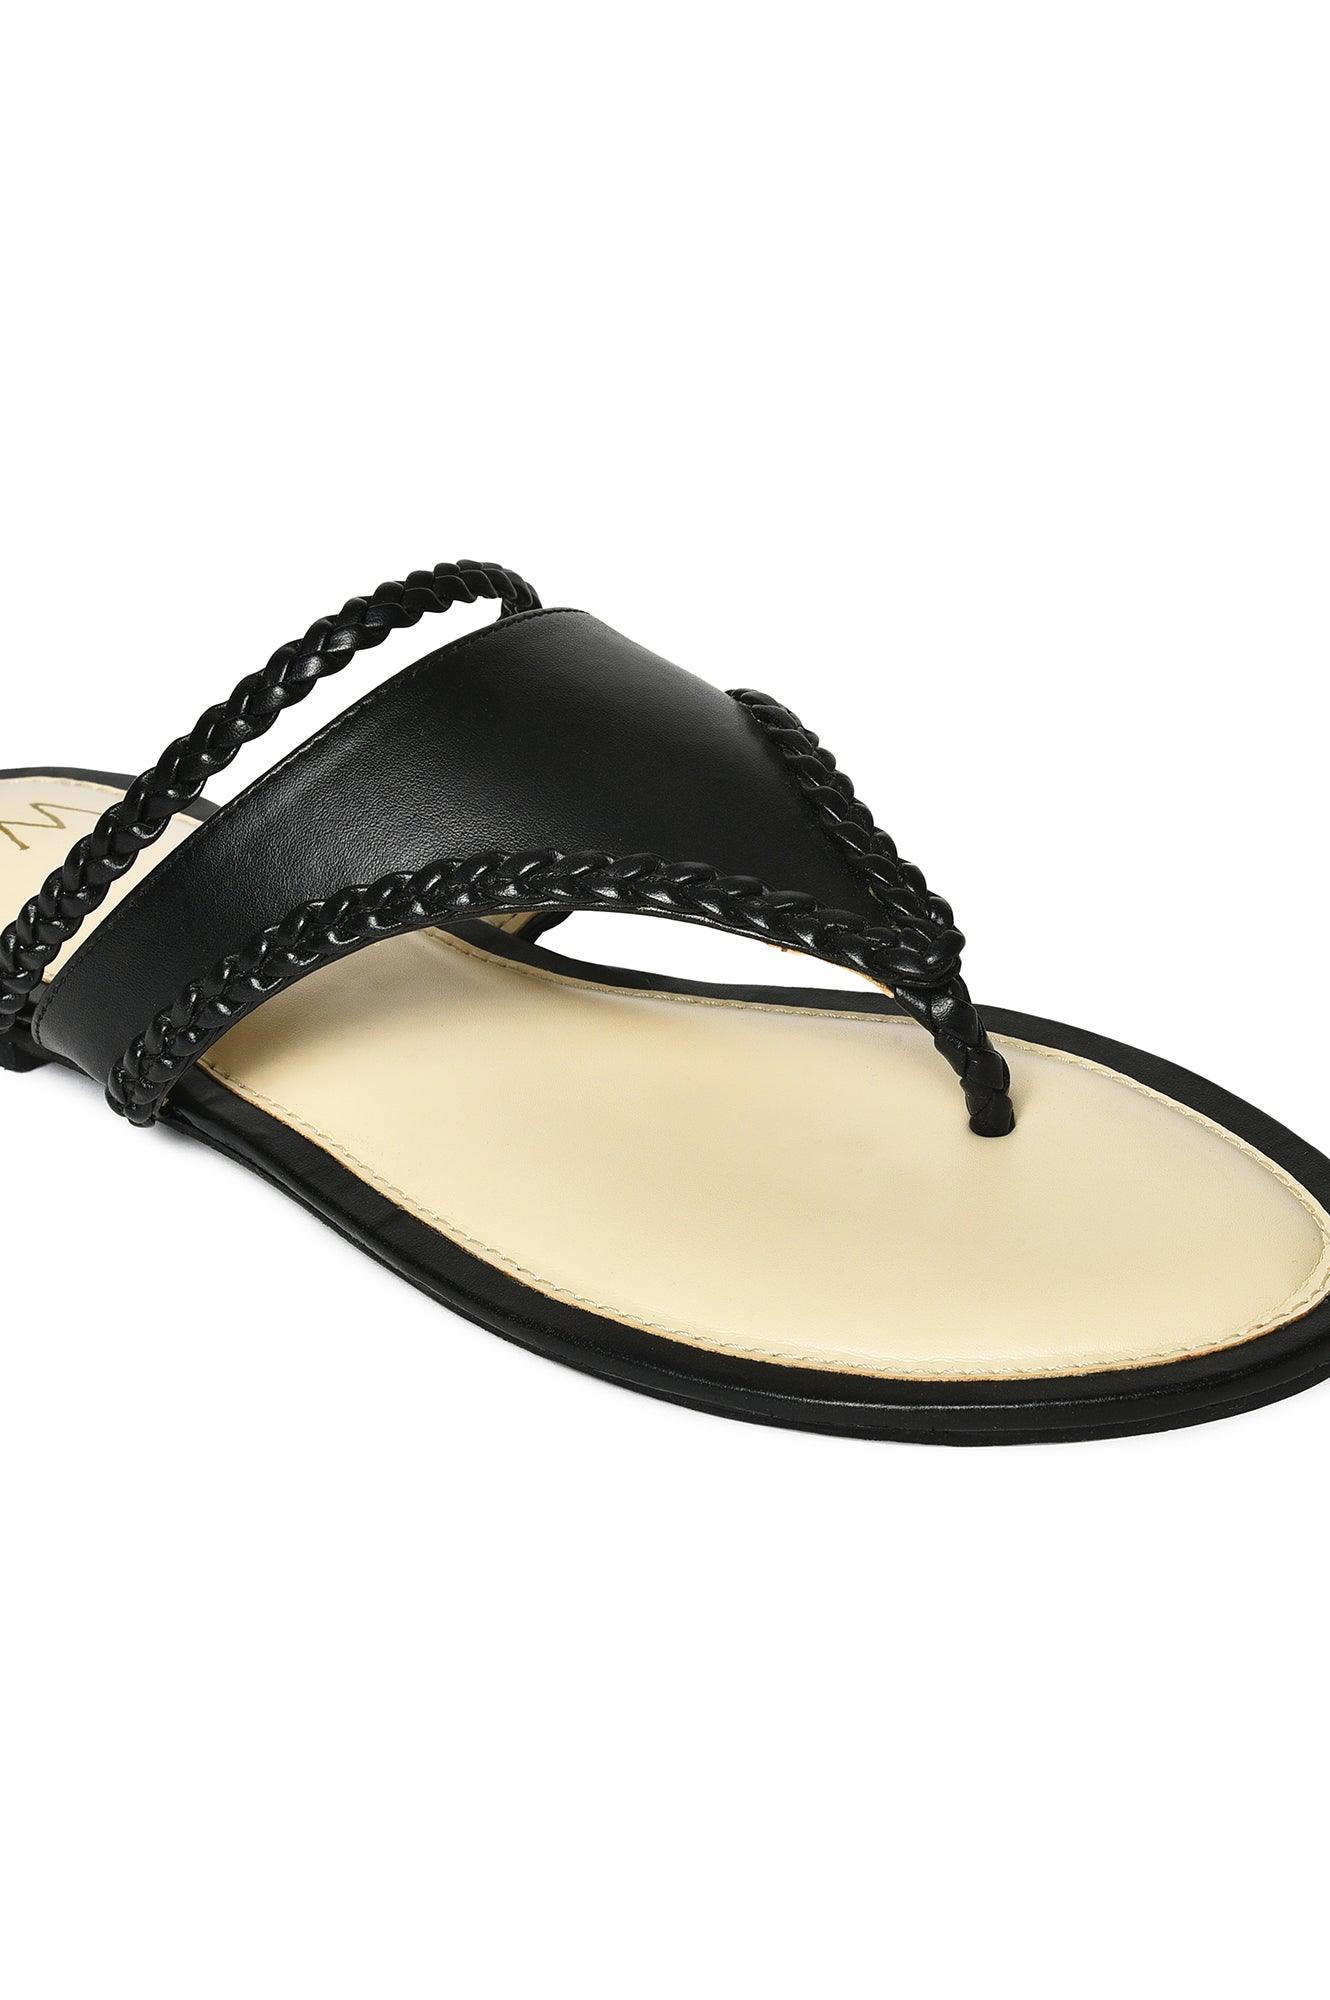 W Woven Design Black Almond Toe Flat - wforwoman